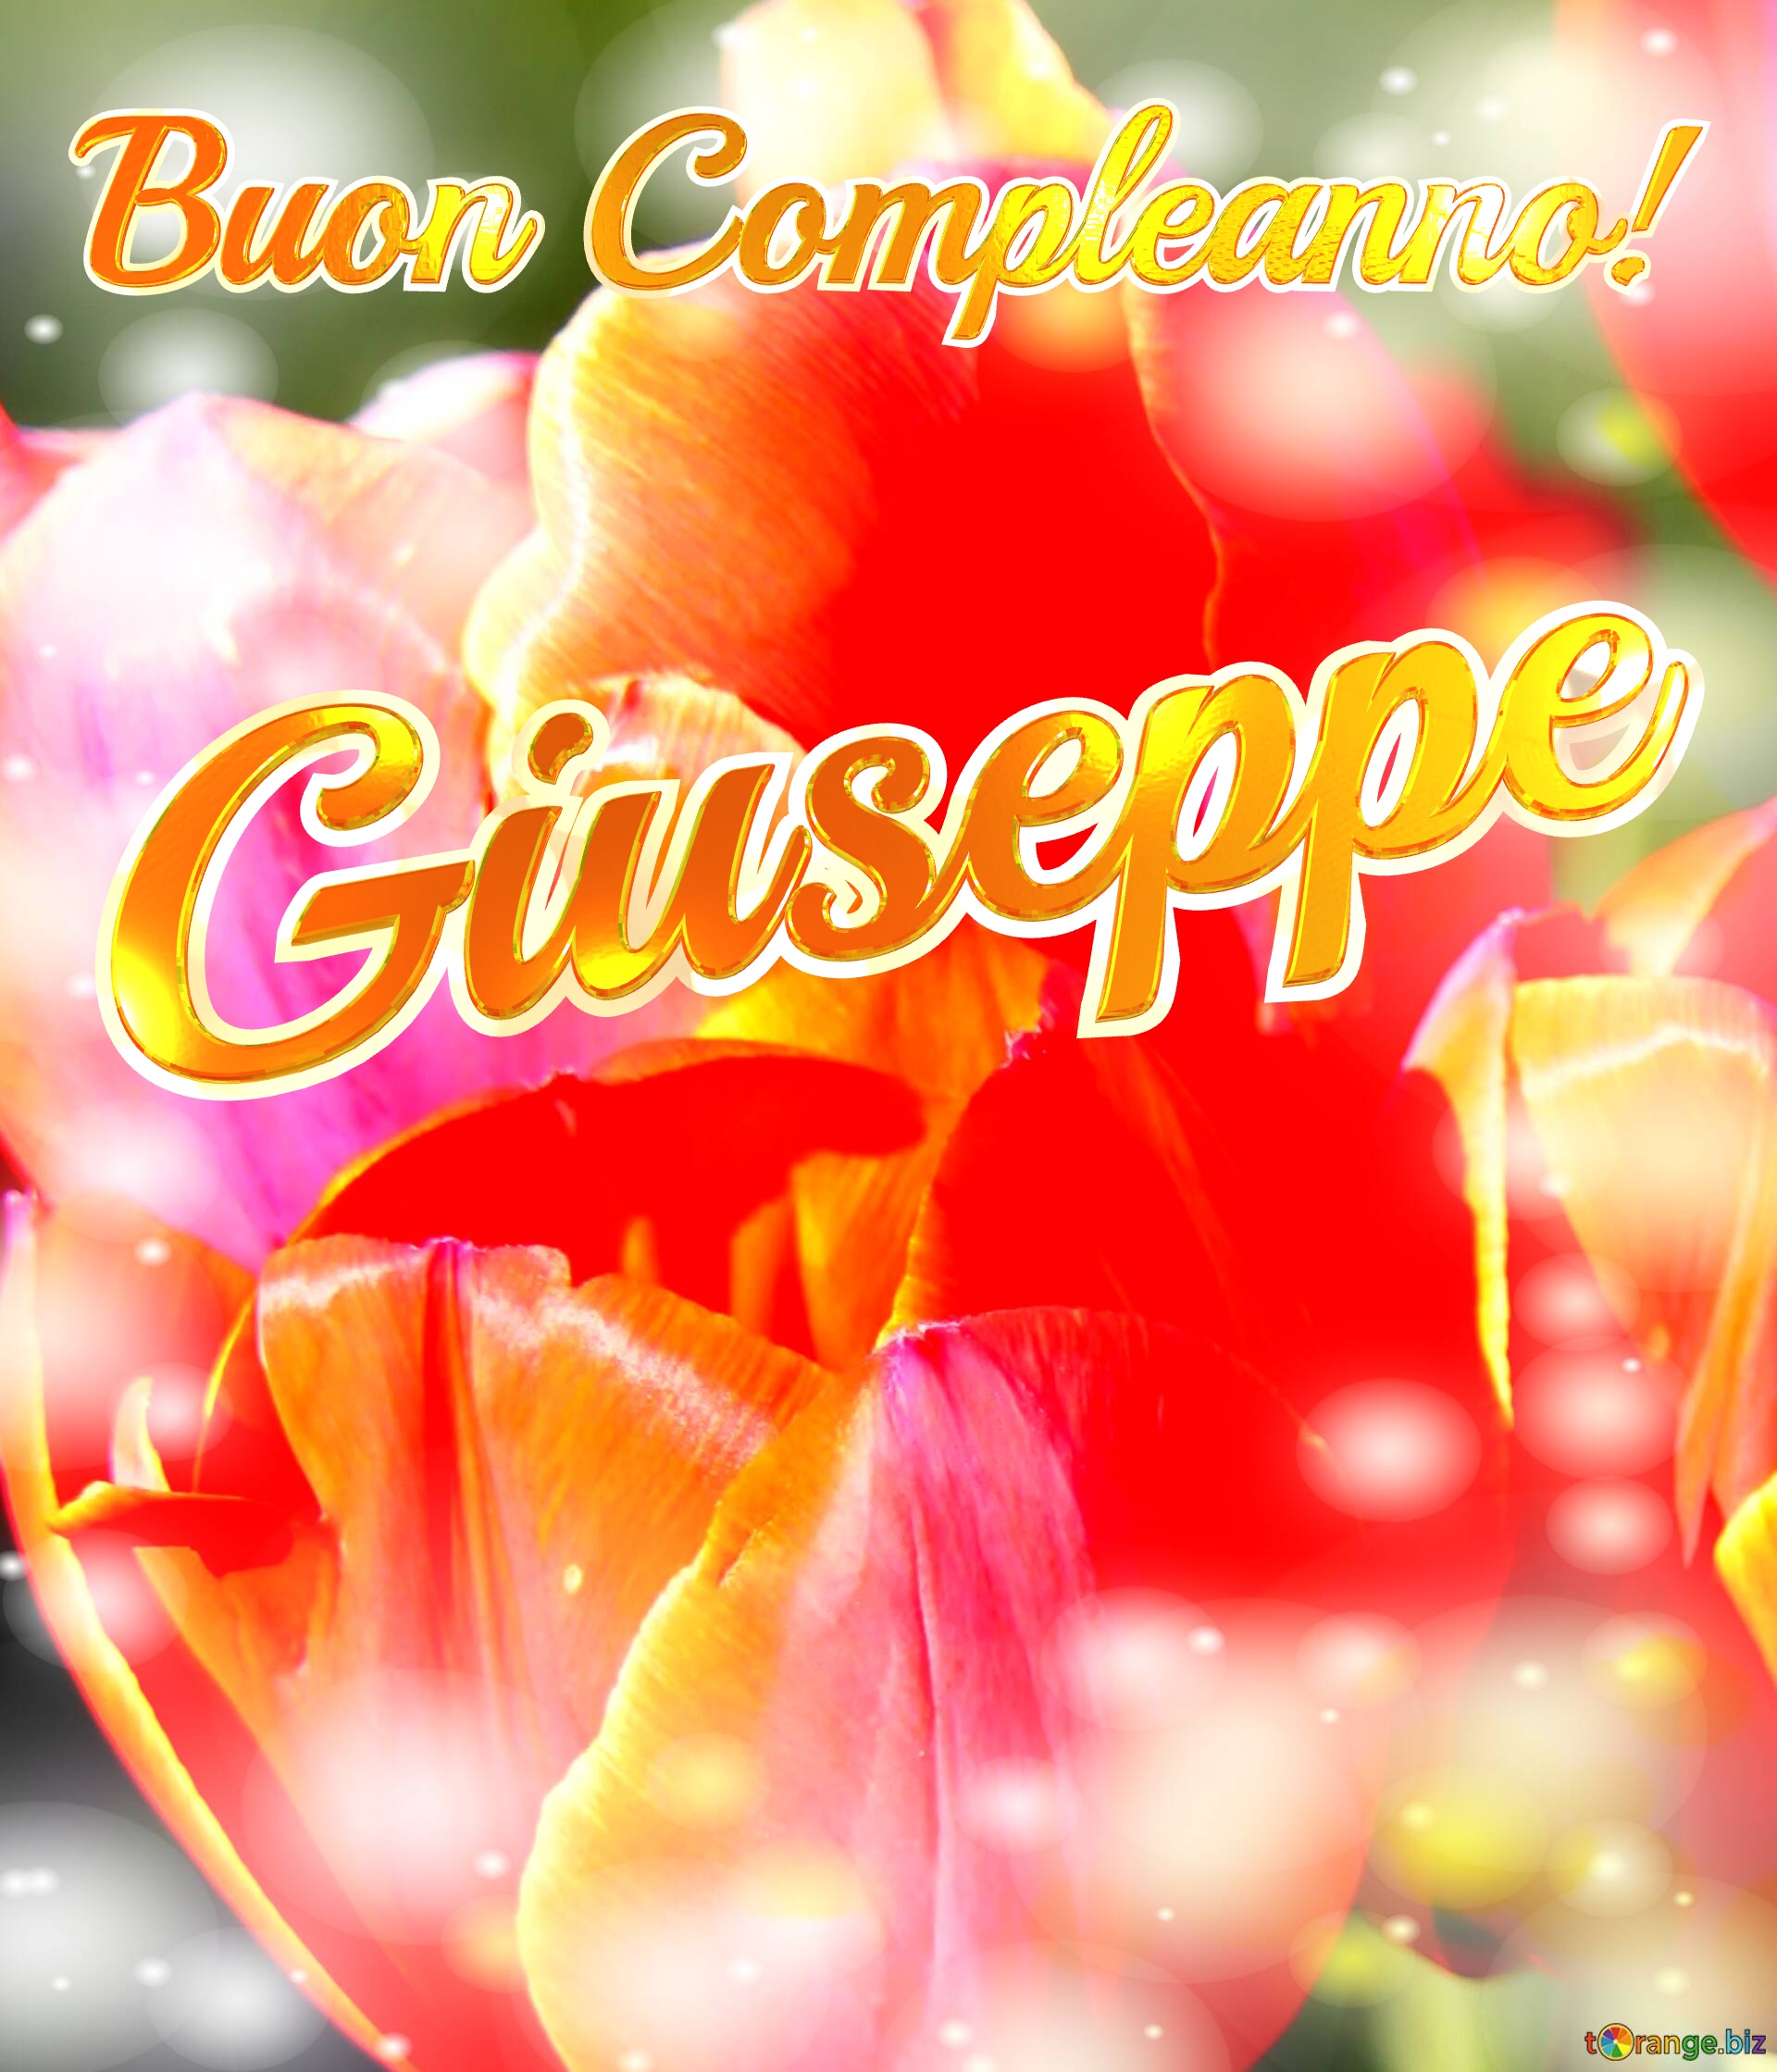 Buon Compleanno! Giuseppe  Il tulipano è un simbolo di devozione, auguri per una vita devota e piena di amore. №0